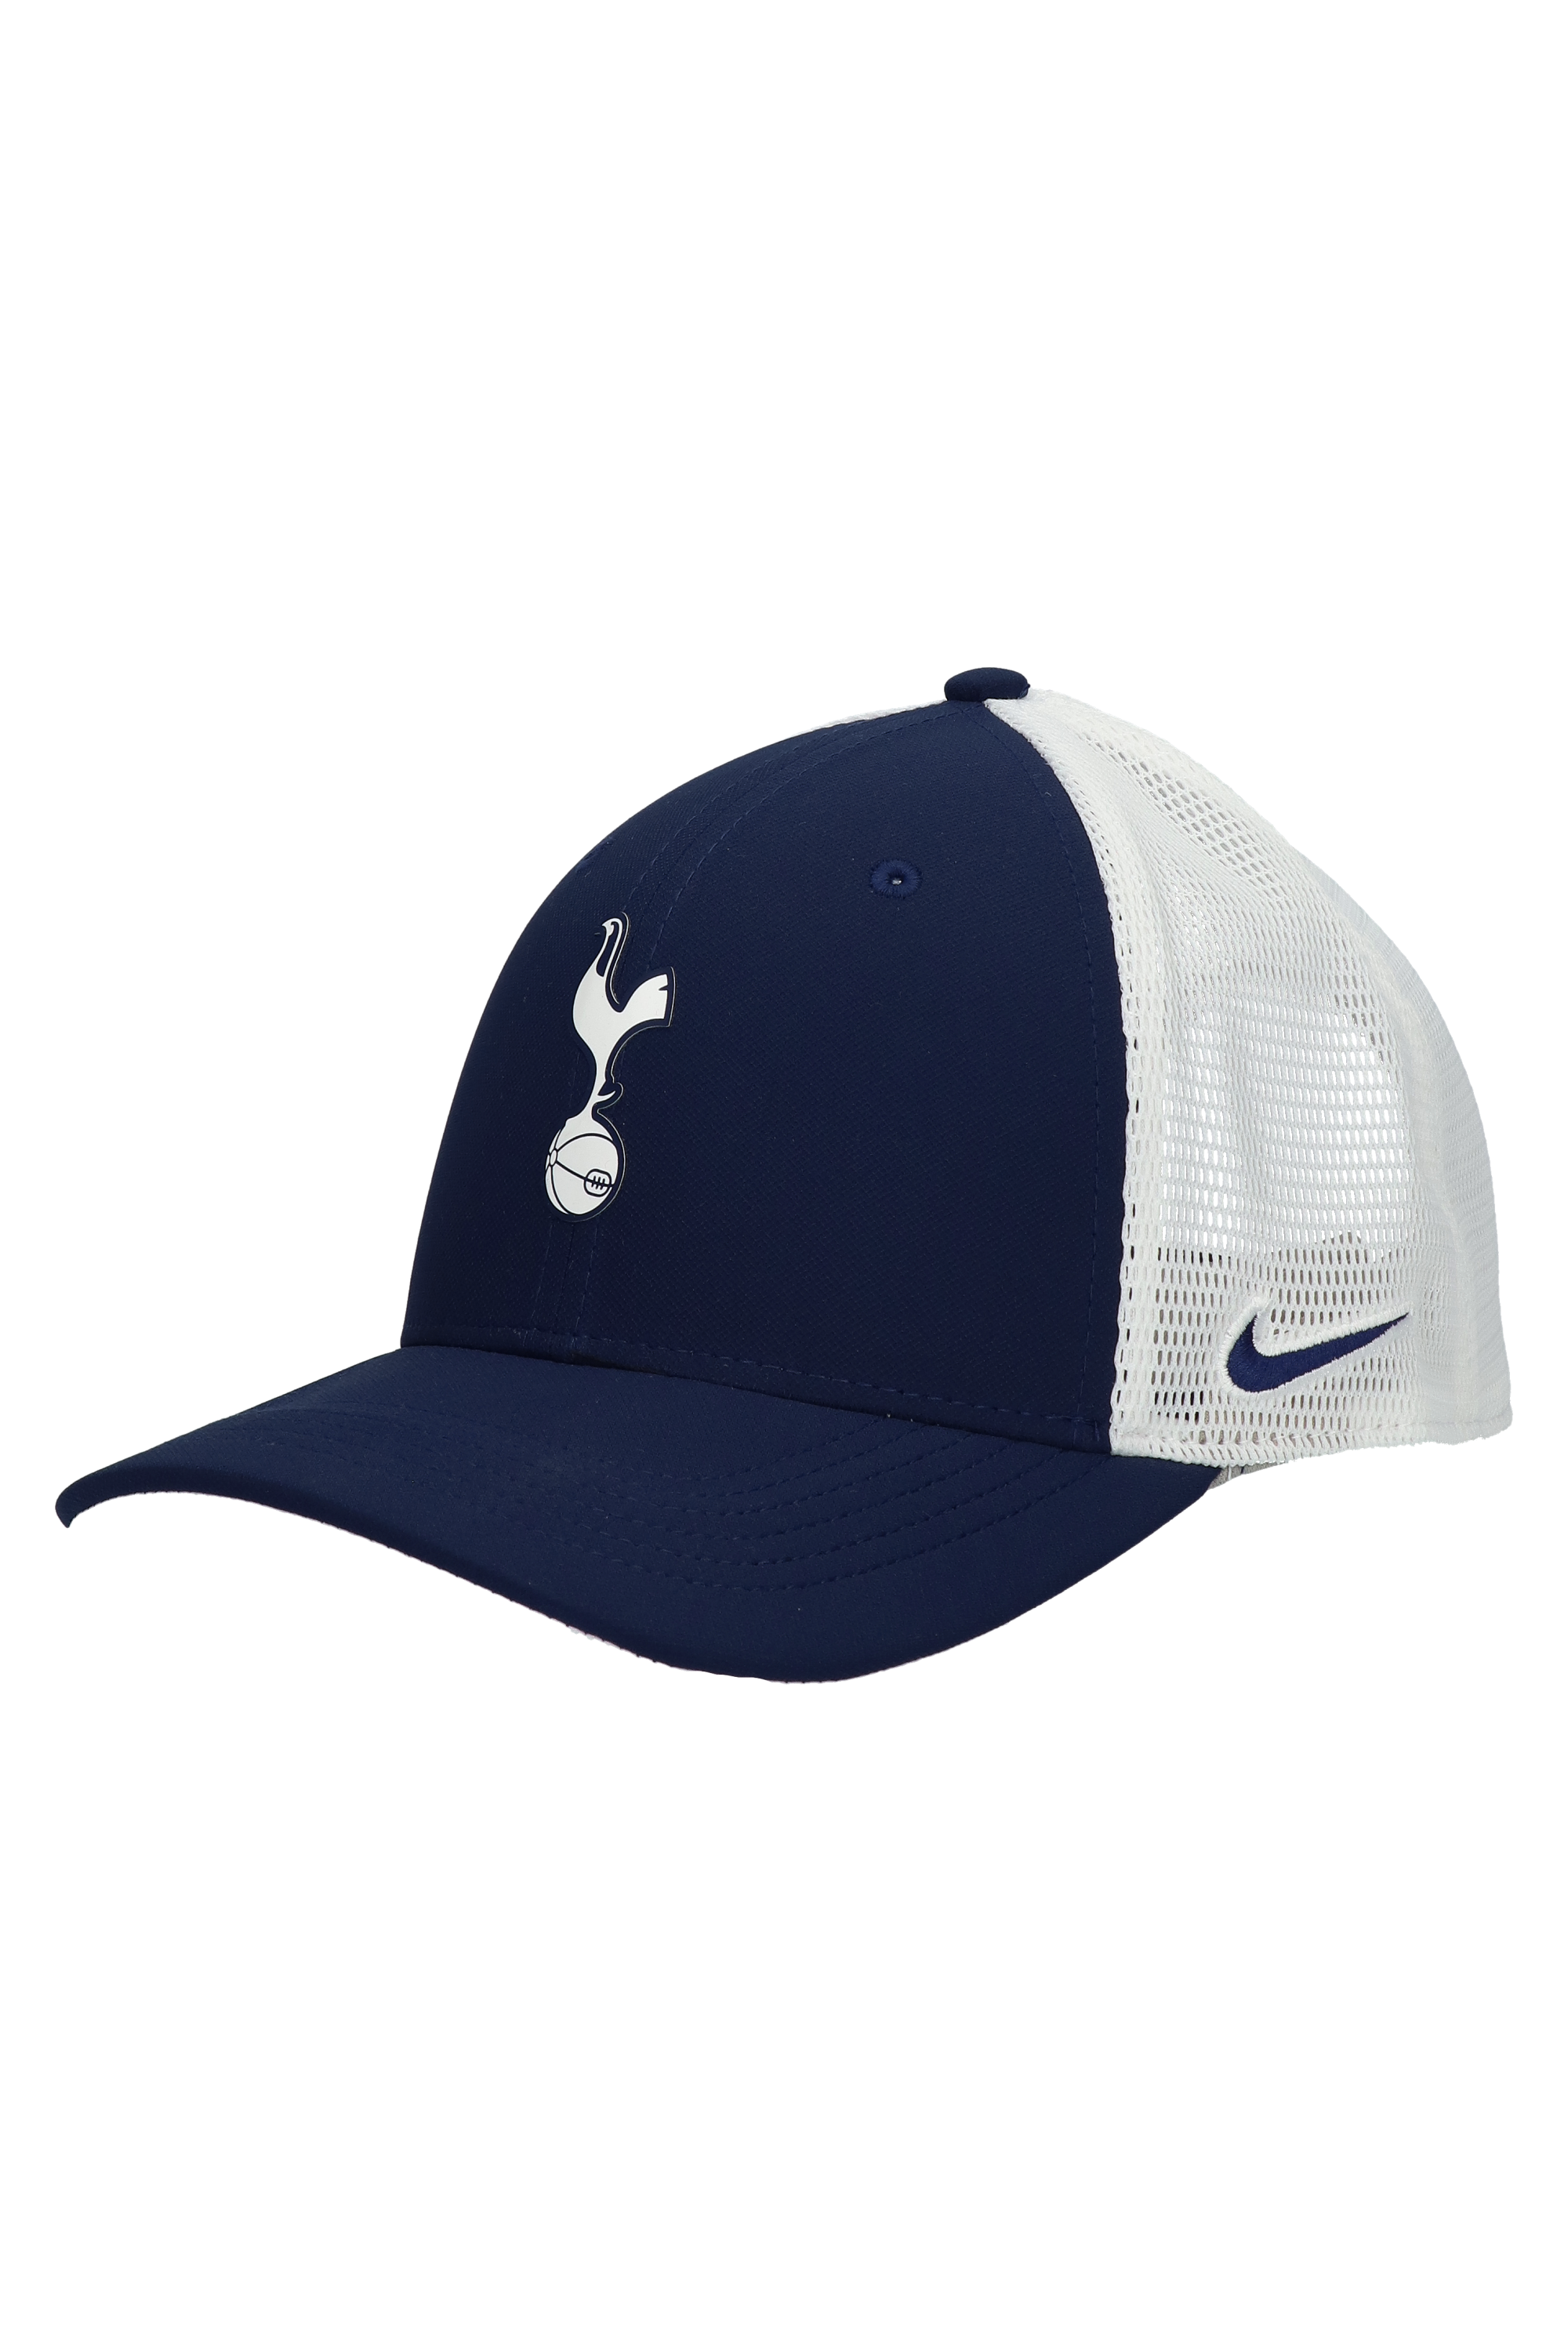 Cap Nike Tottenham Hotspur FC Aerobill 